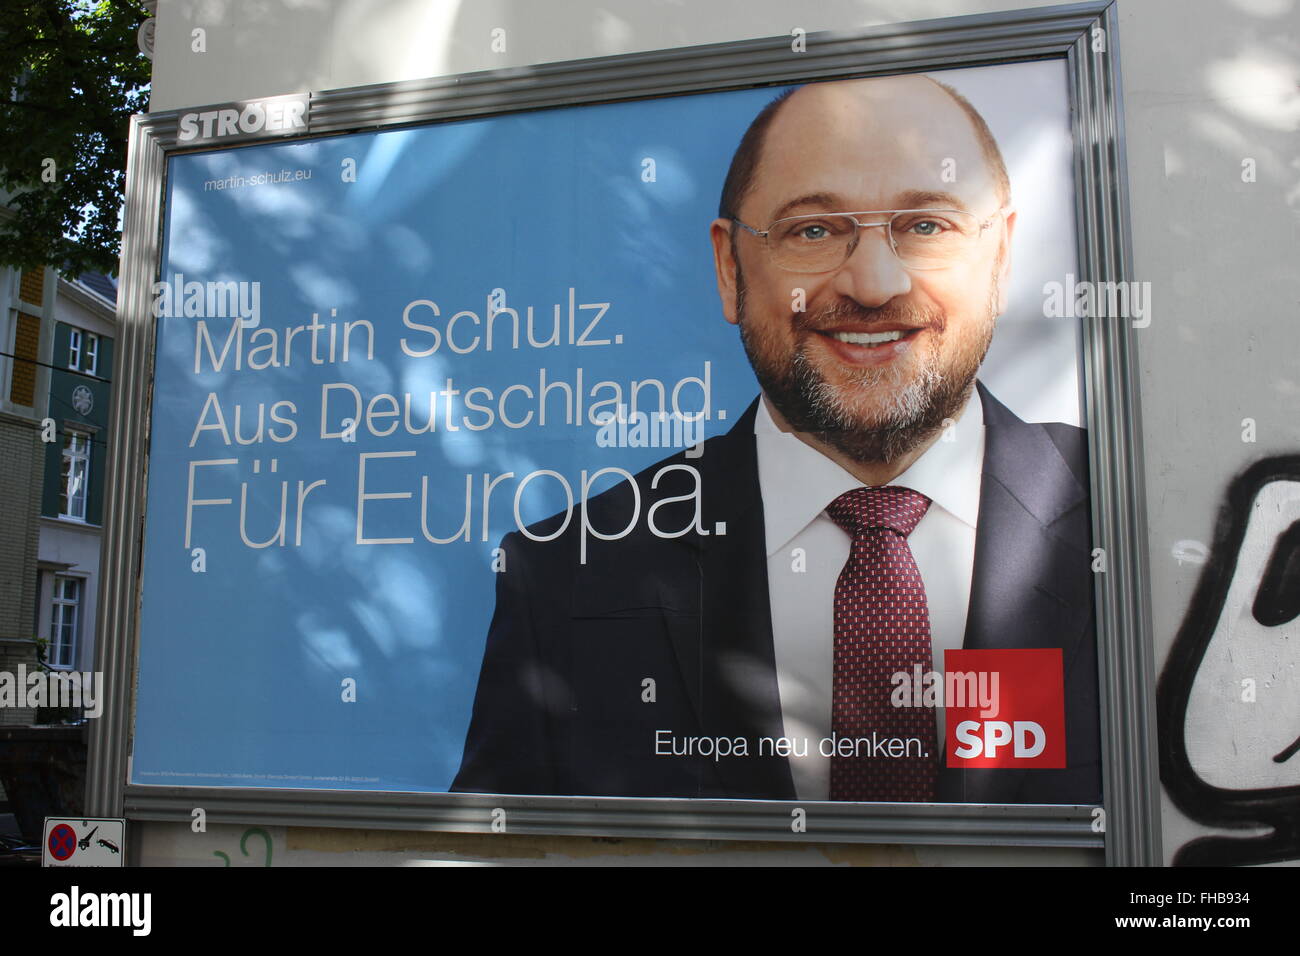 Wahlplakat mit Martin Schulz, SPD bei der Europa-Wahl 2014 Stockfoto